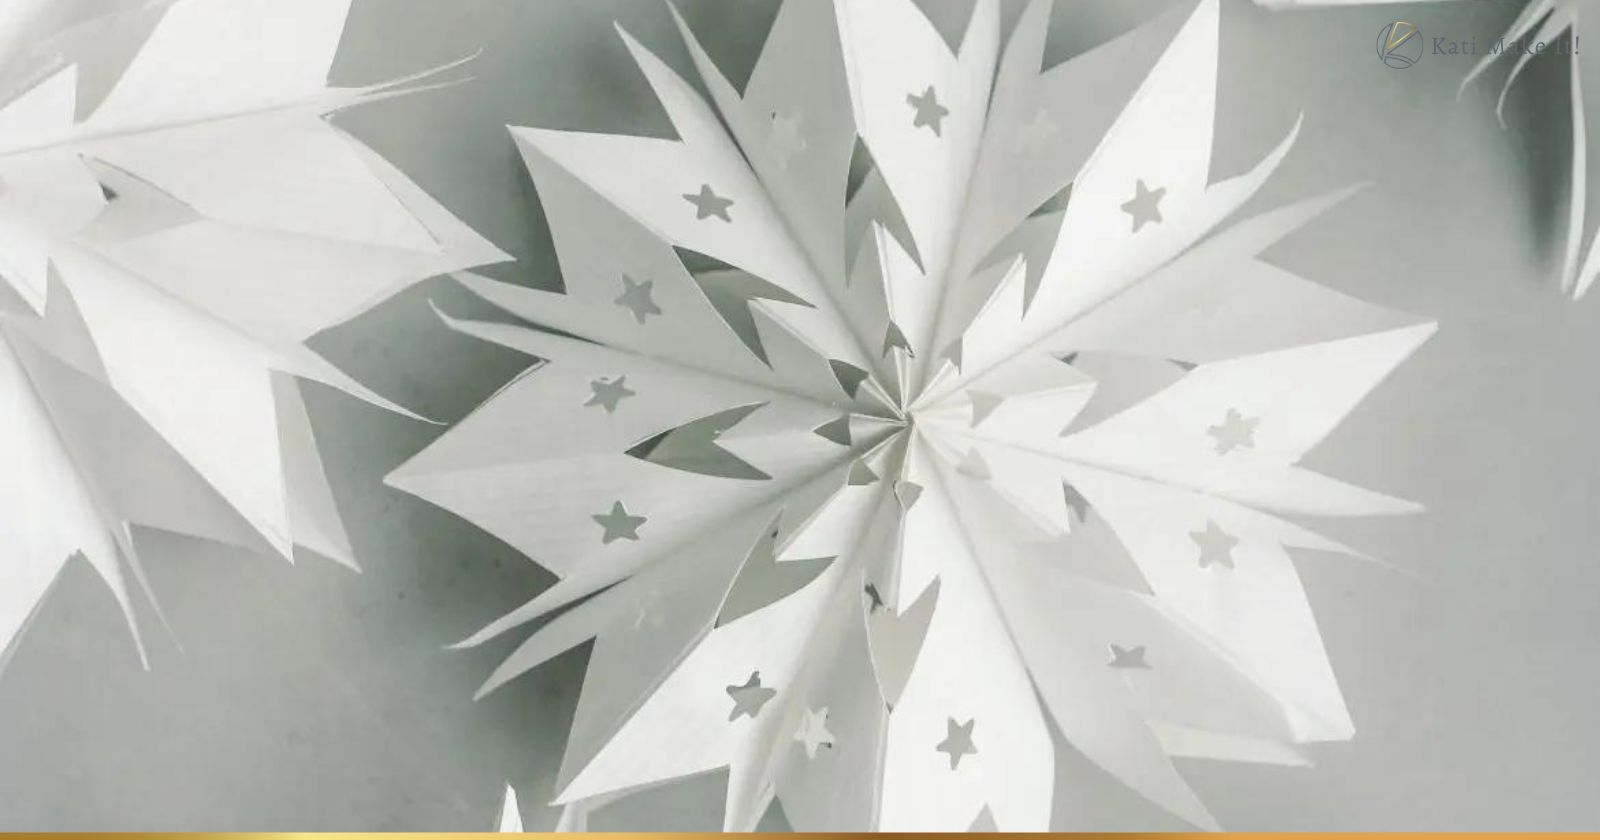 Sterne aus Papiertüten einfach selber machen - So gelingen Papiertütensterne selbst Kindern ganz leicht. Hier findest du die DIY Anleitung inkl. Vorlagen für die ultraschnelle Weihnachtsdeko.